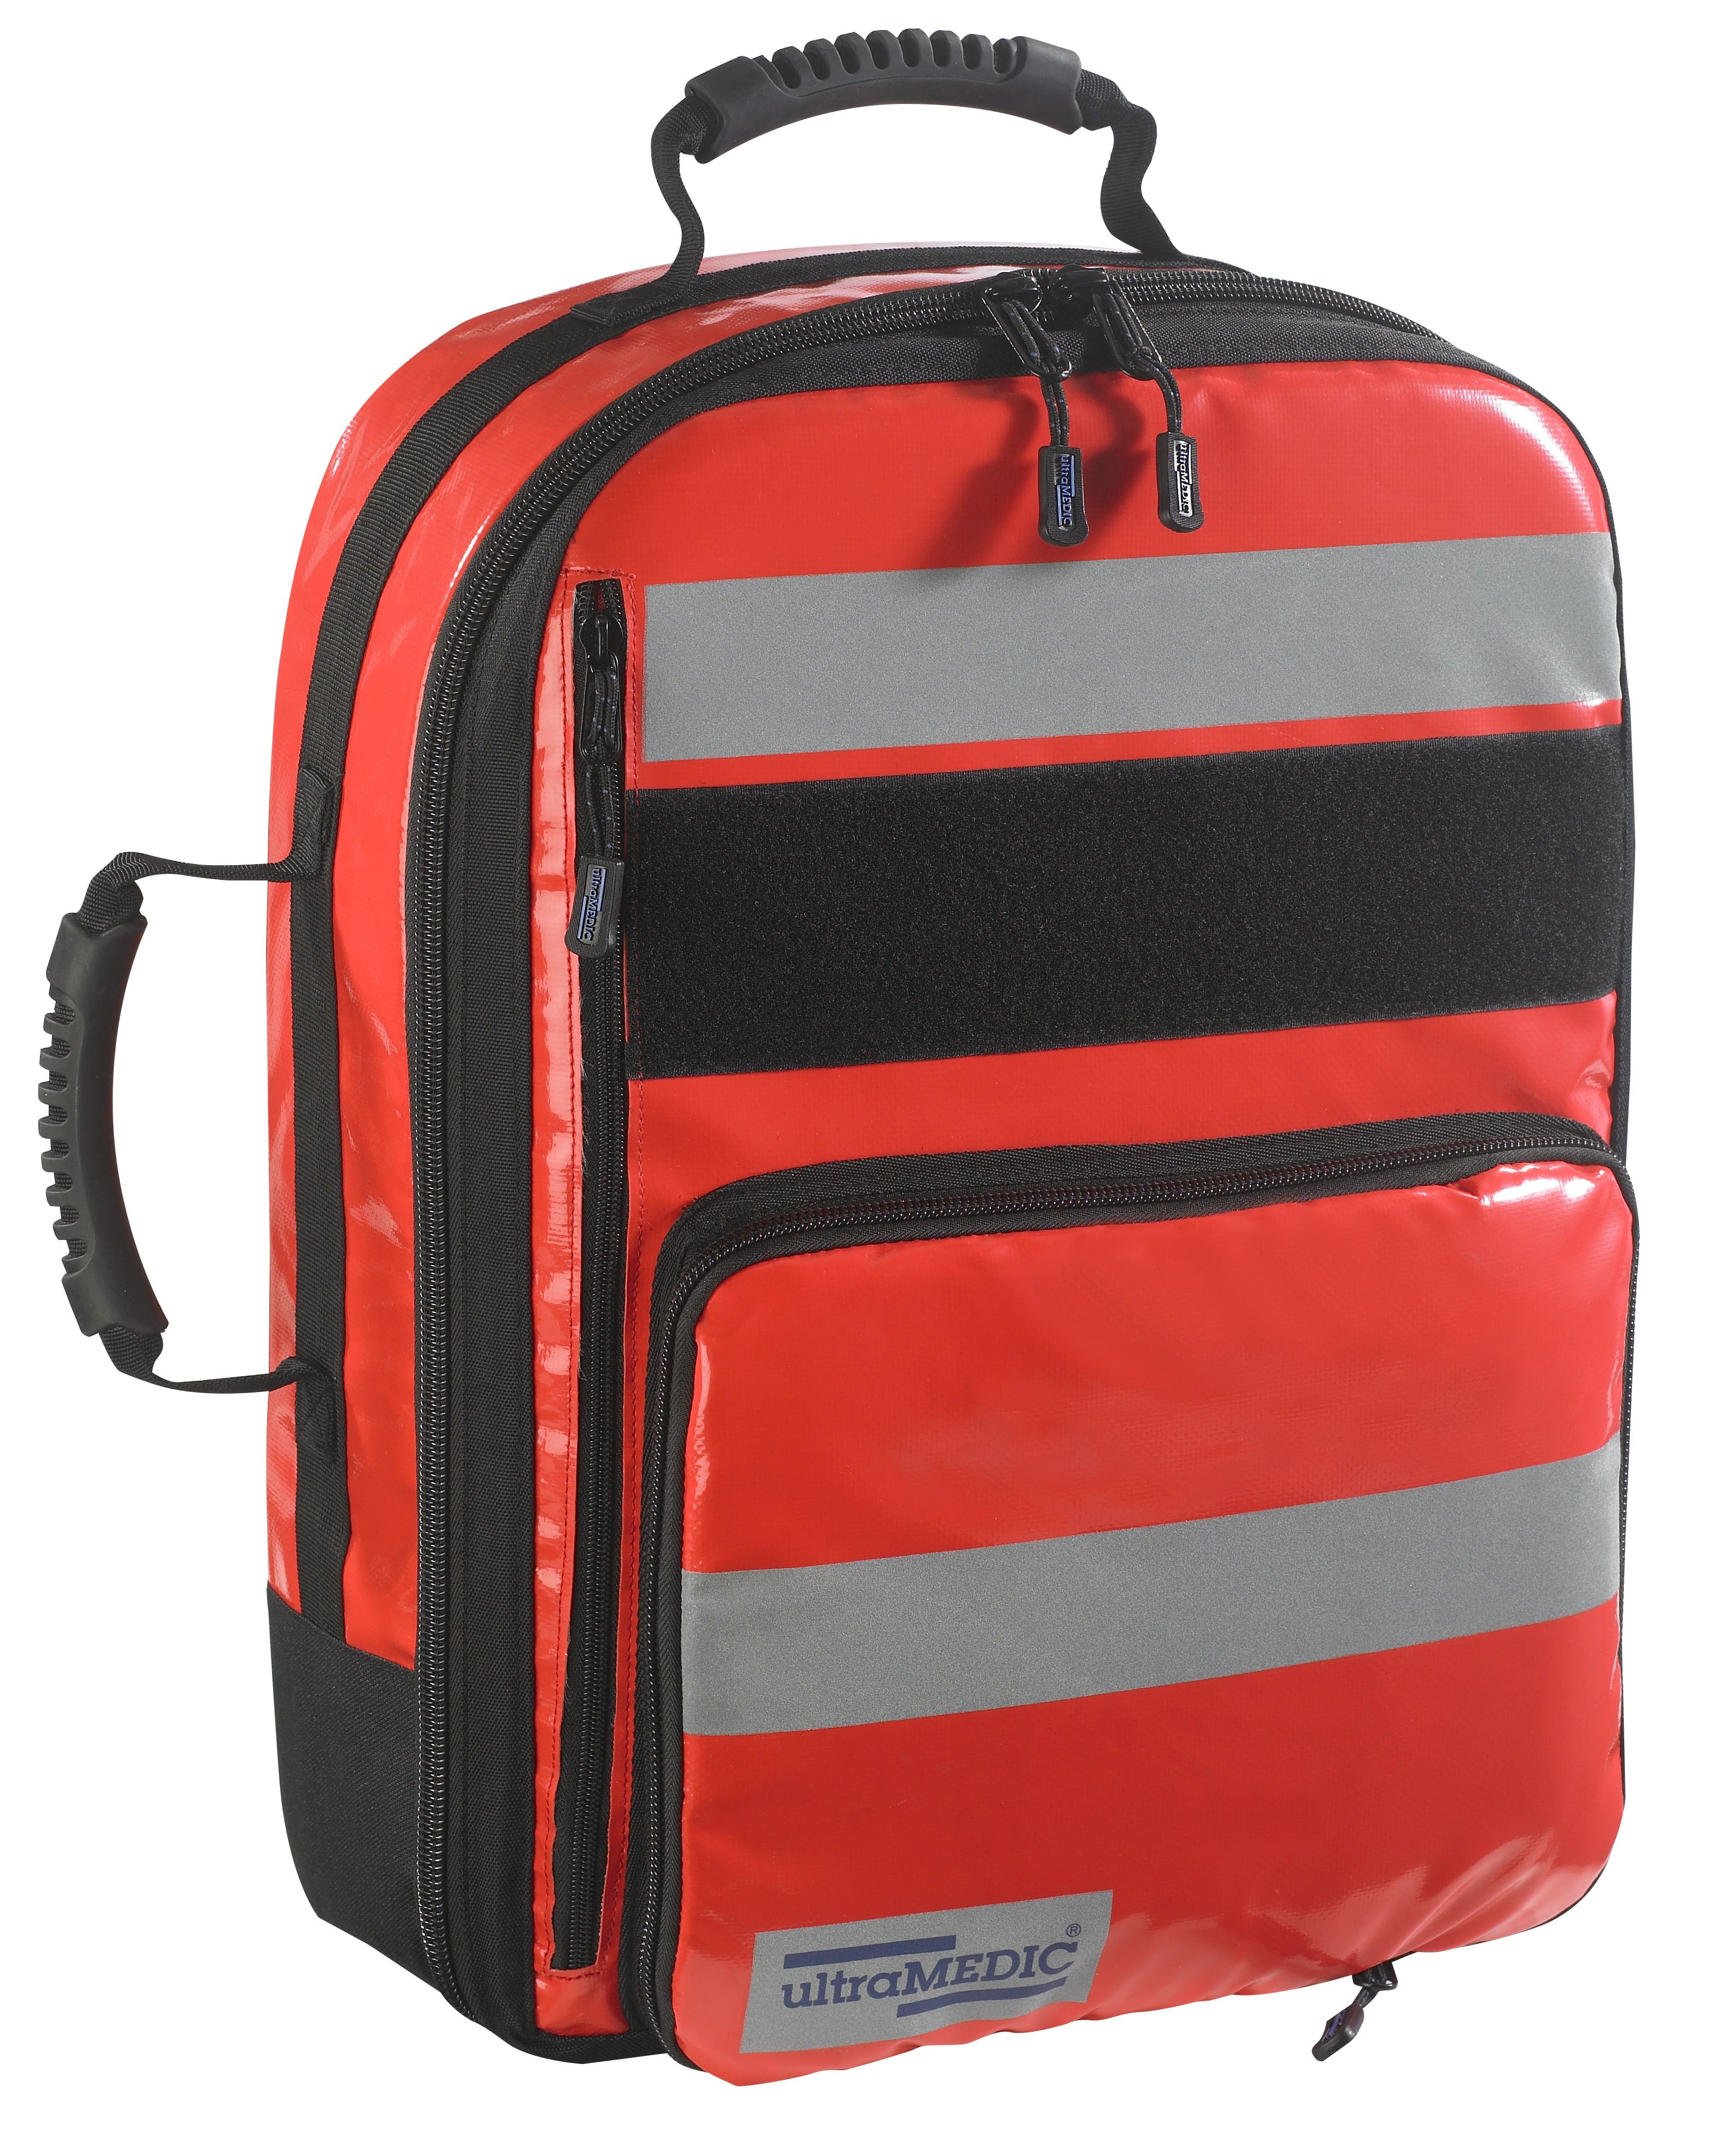 Notfall-Sanitätsrucksack RESCUE I (leer) ohne Füllung. Farbe orange-rot. Fassungsvolumen ca. 40 Ltr., mit 5 farblich sortierten Modul-Taschen. Maße 520x380x220 mm, Gewicht ca. 4,00 kg